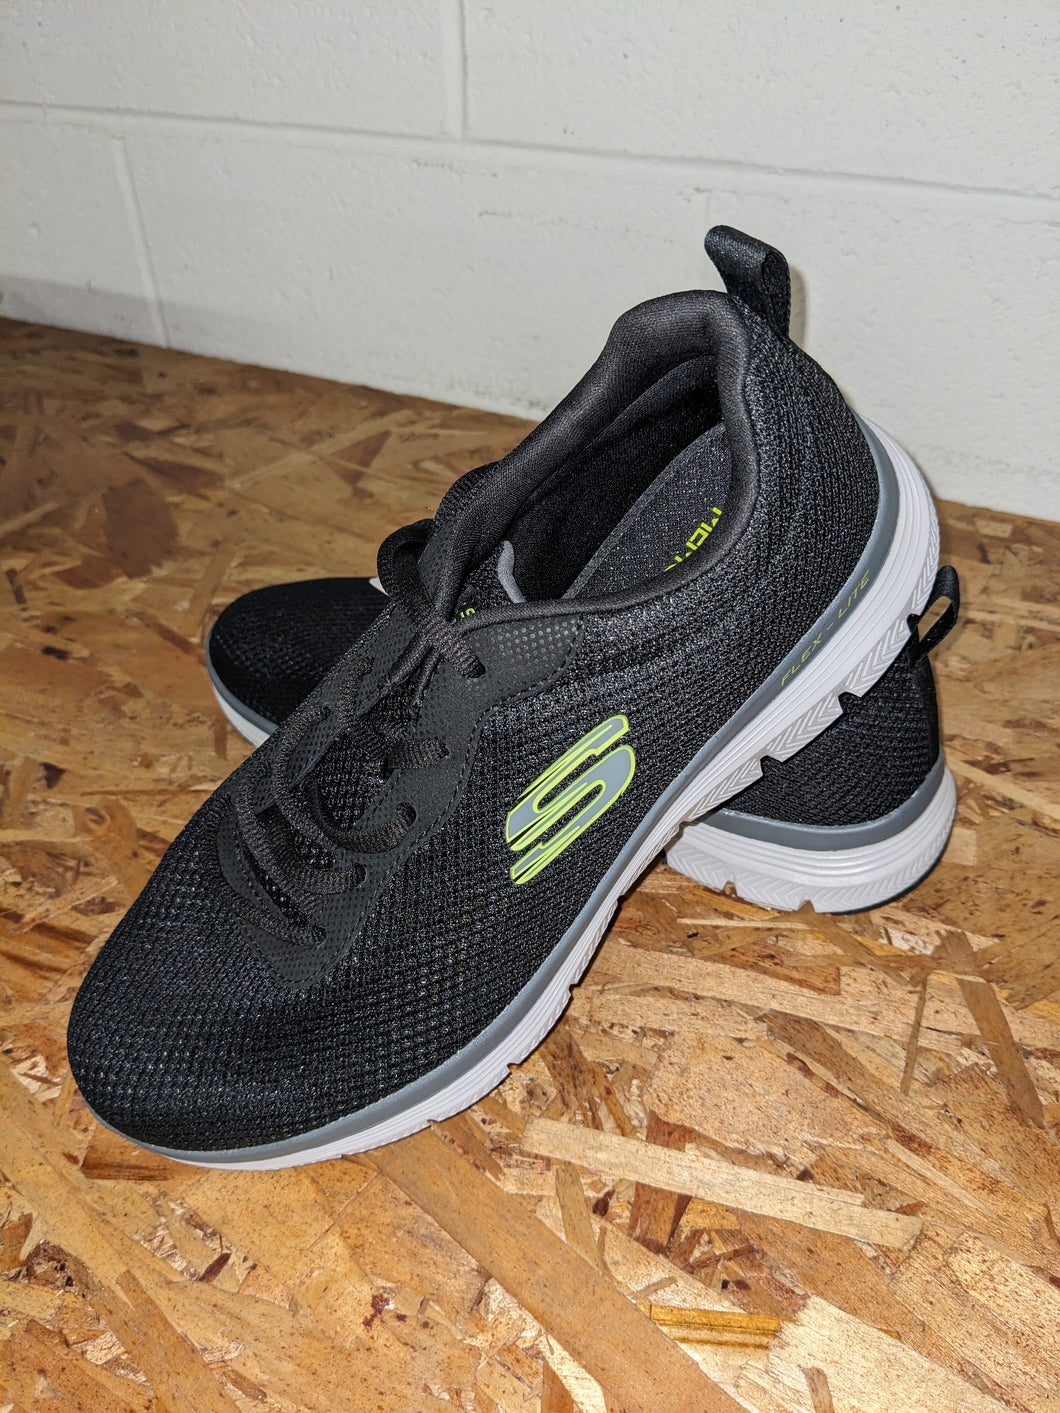 Men's Skechers Flex Lite sneakers, black, size 8